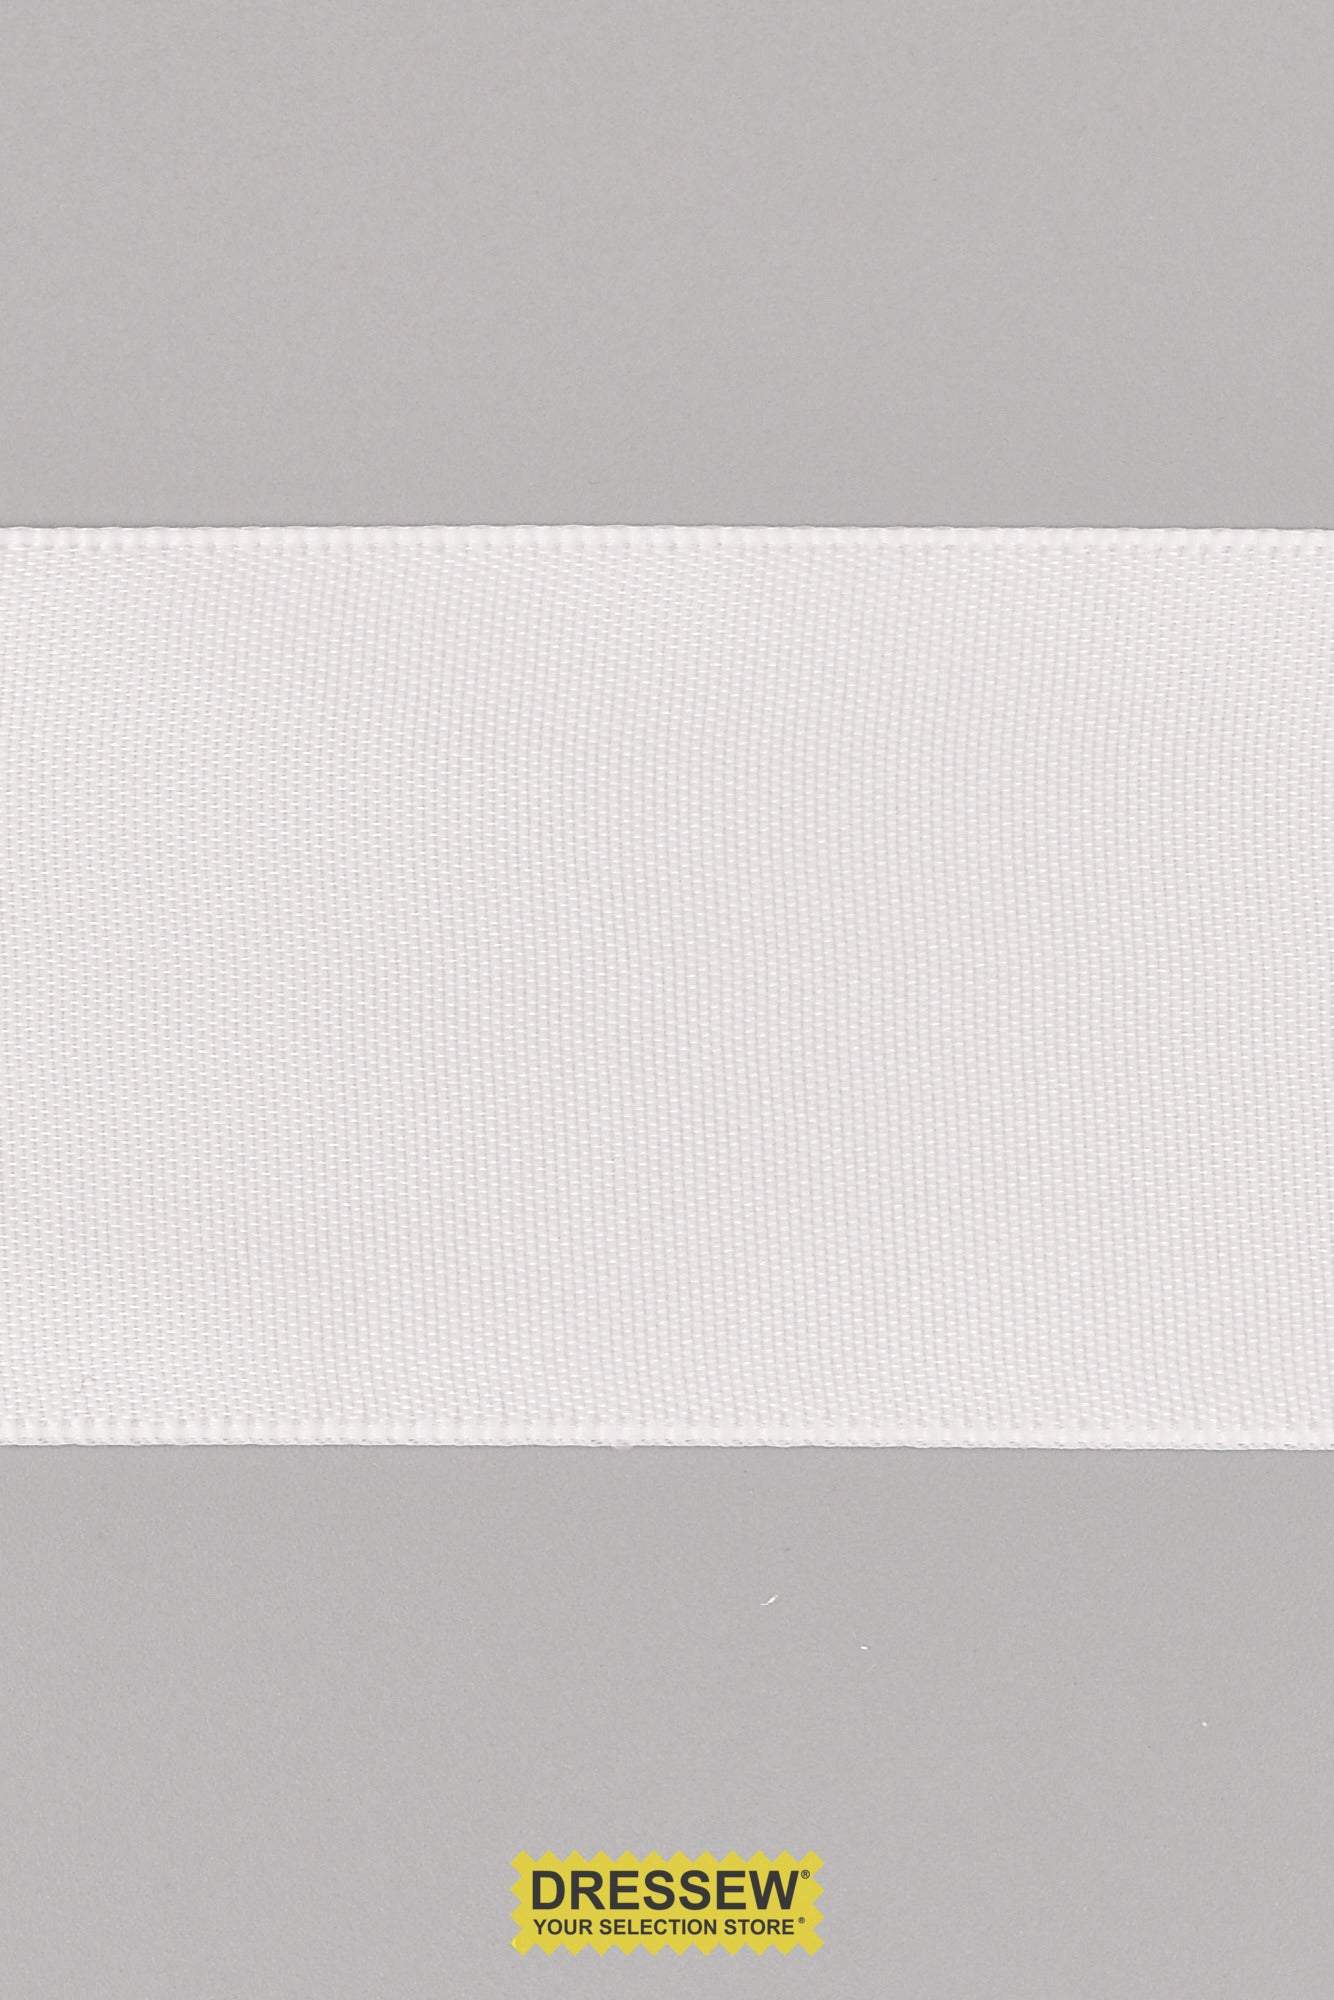 Single Face Satin Ribbon 38mm (1-1/2") White